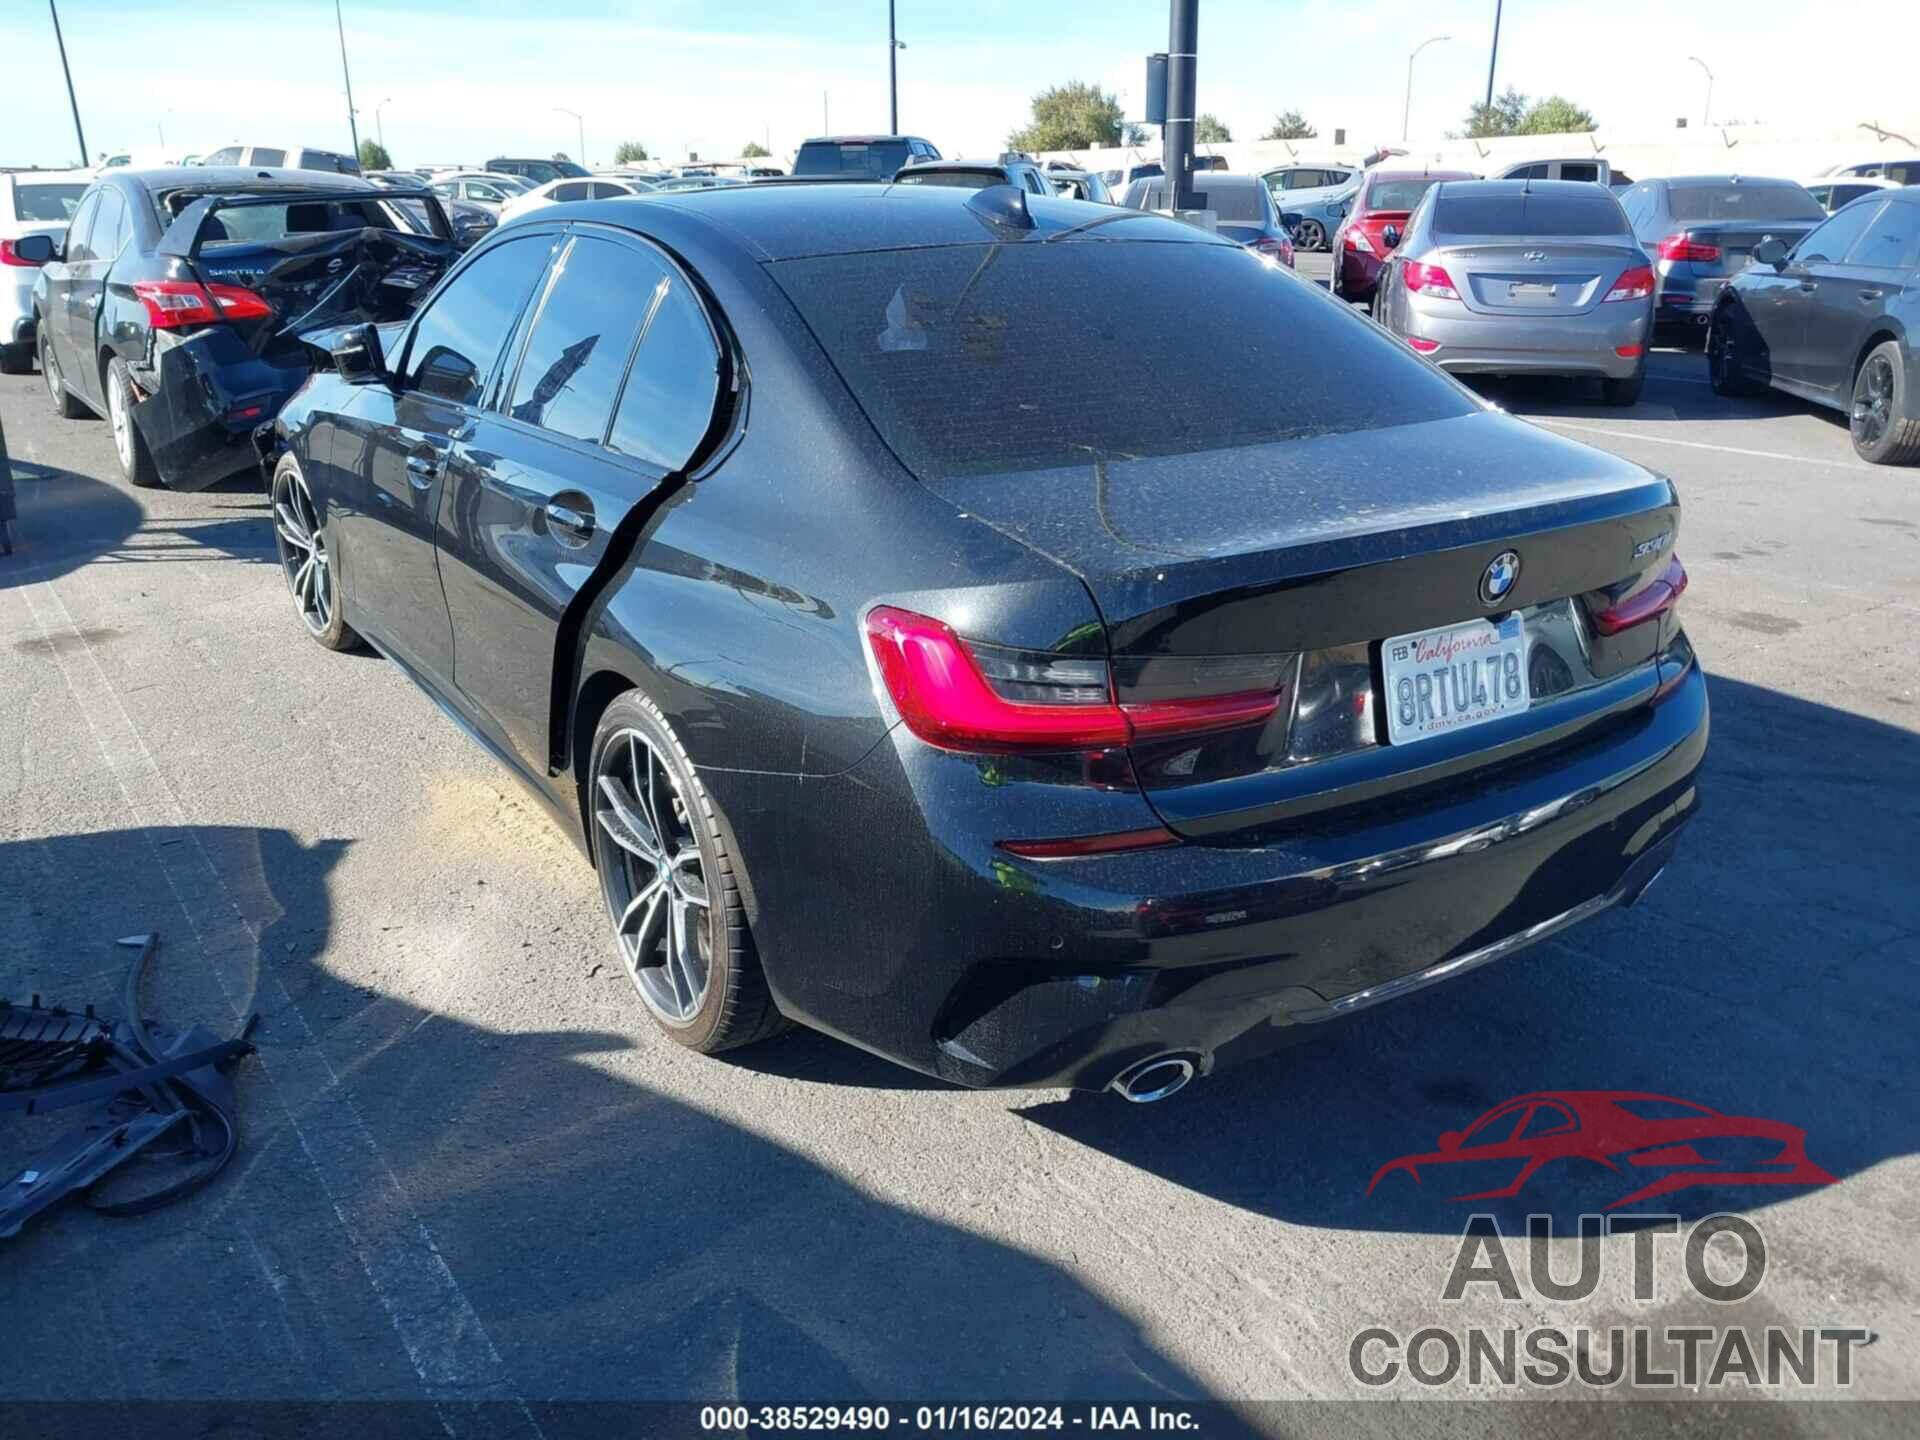 BMW 330I 2020 - 3MW5R1J05L8B16981